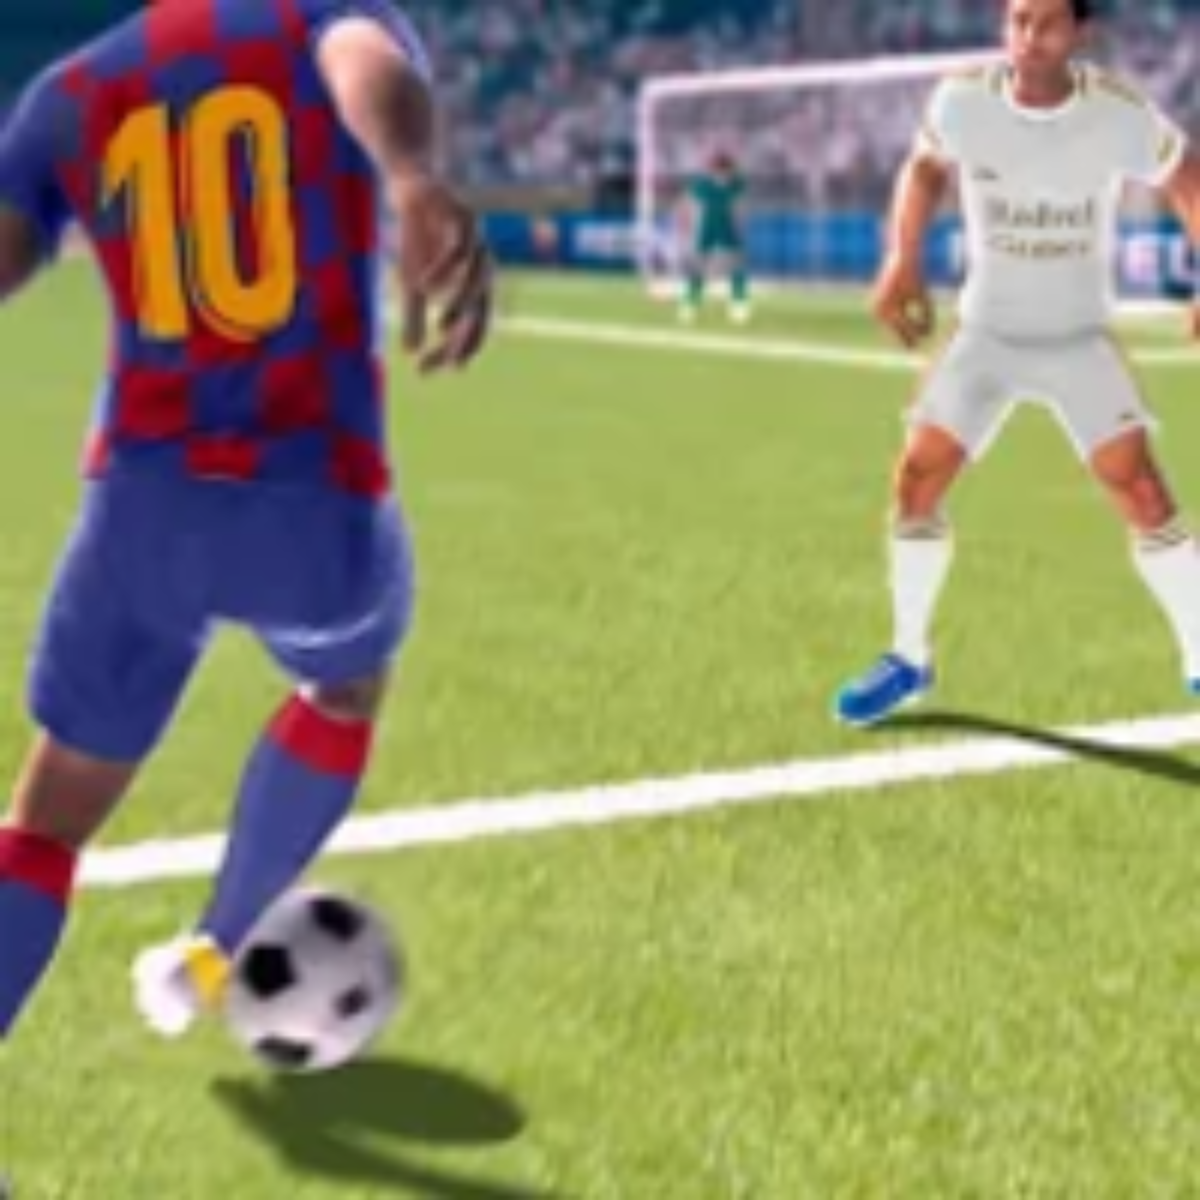 Head Soccer Apk Mod Dinheiro Infinito atualizado 2021 download